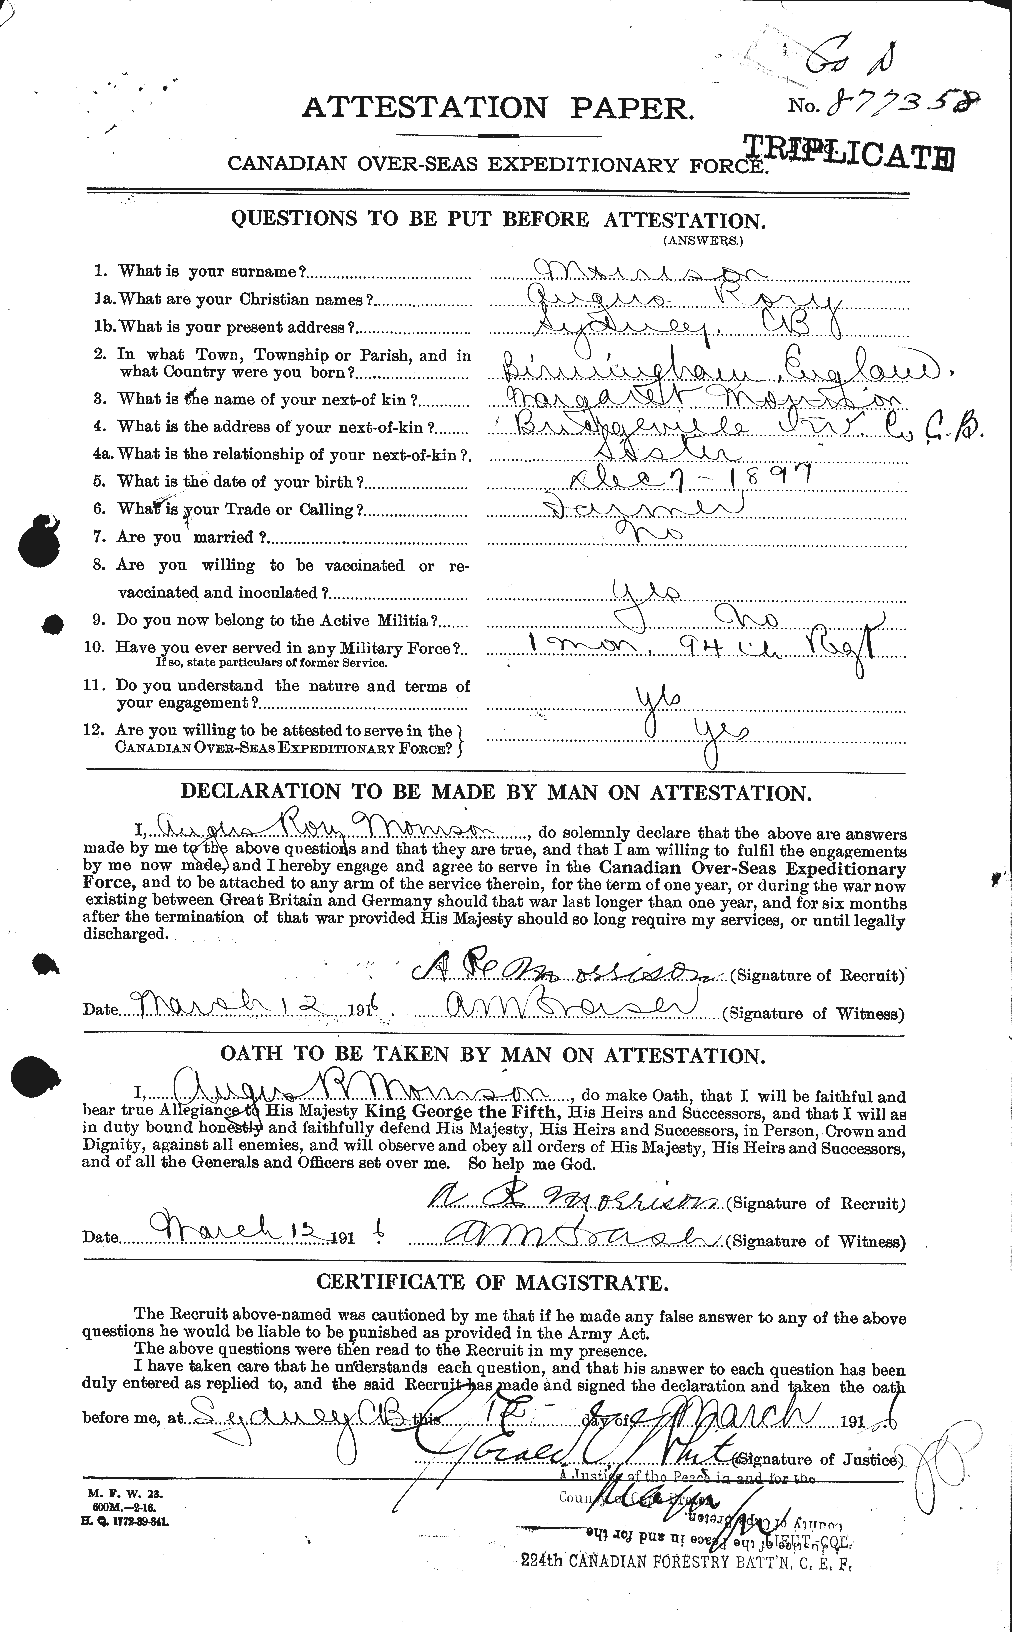 Dossiers du Personnel de la Première Guerre mondiale - CEC 511055a